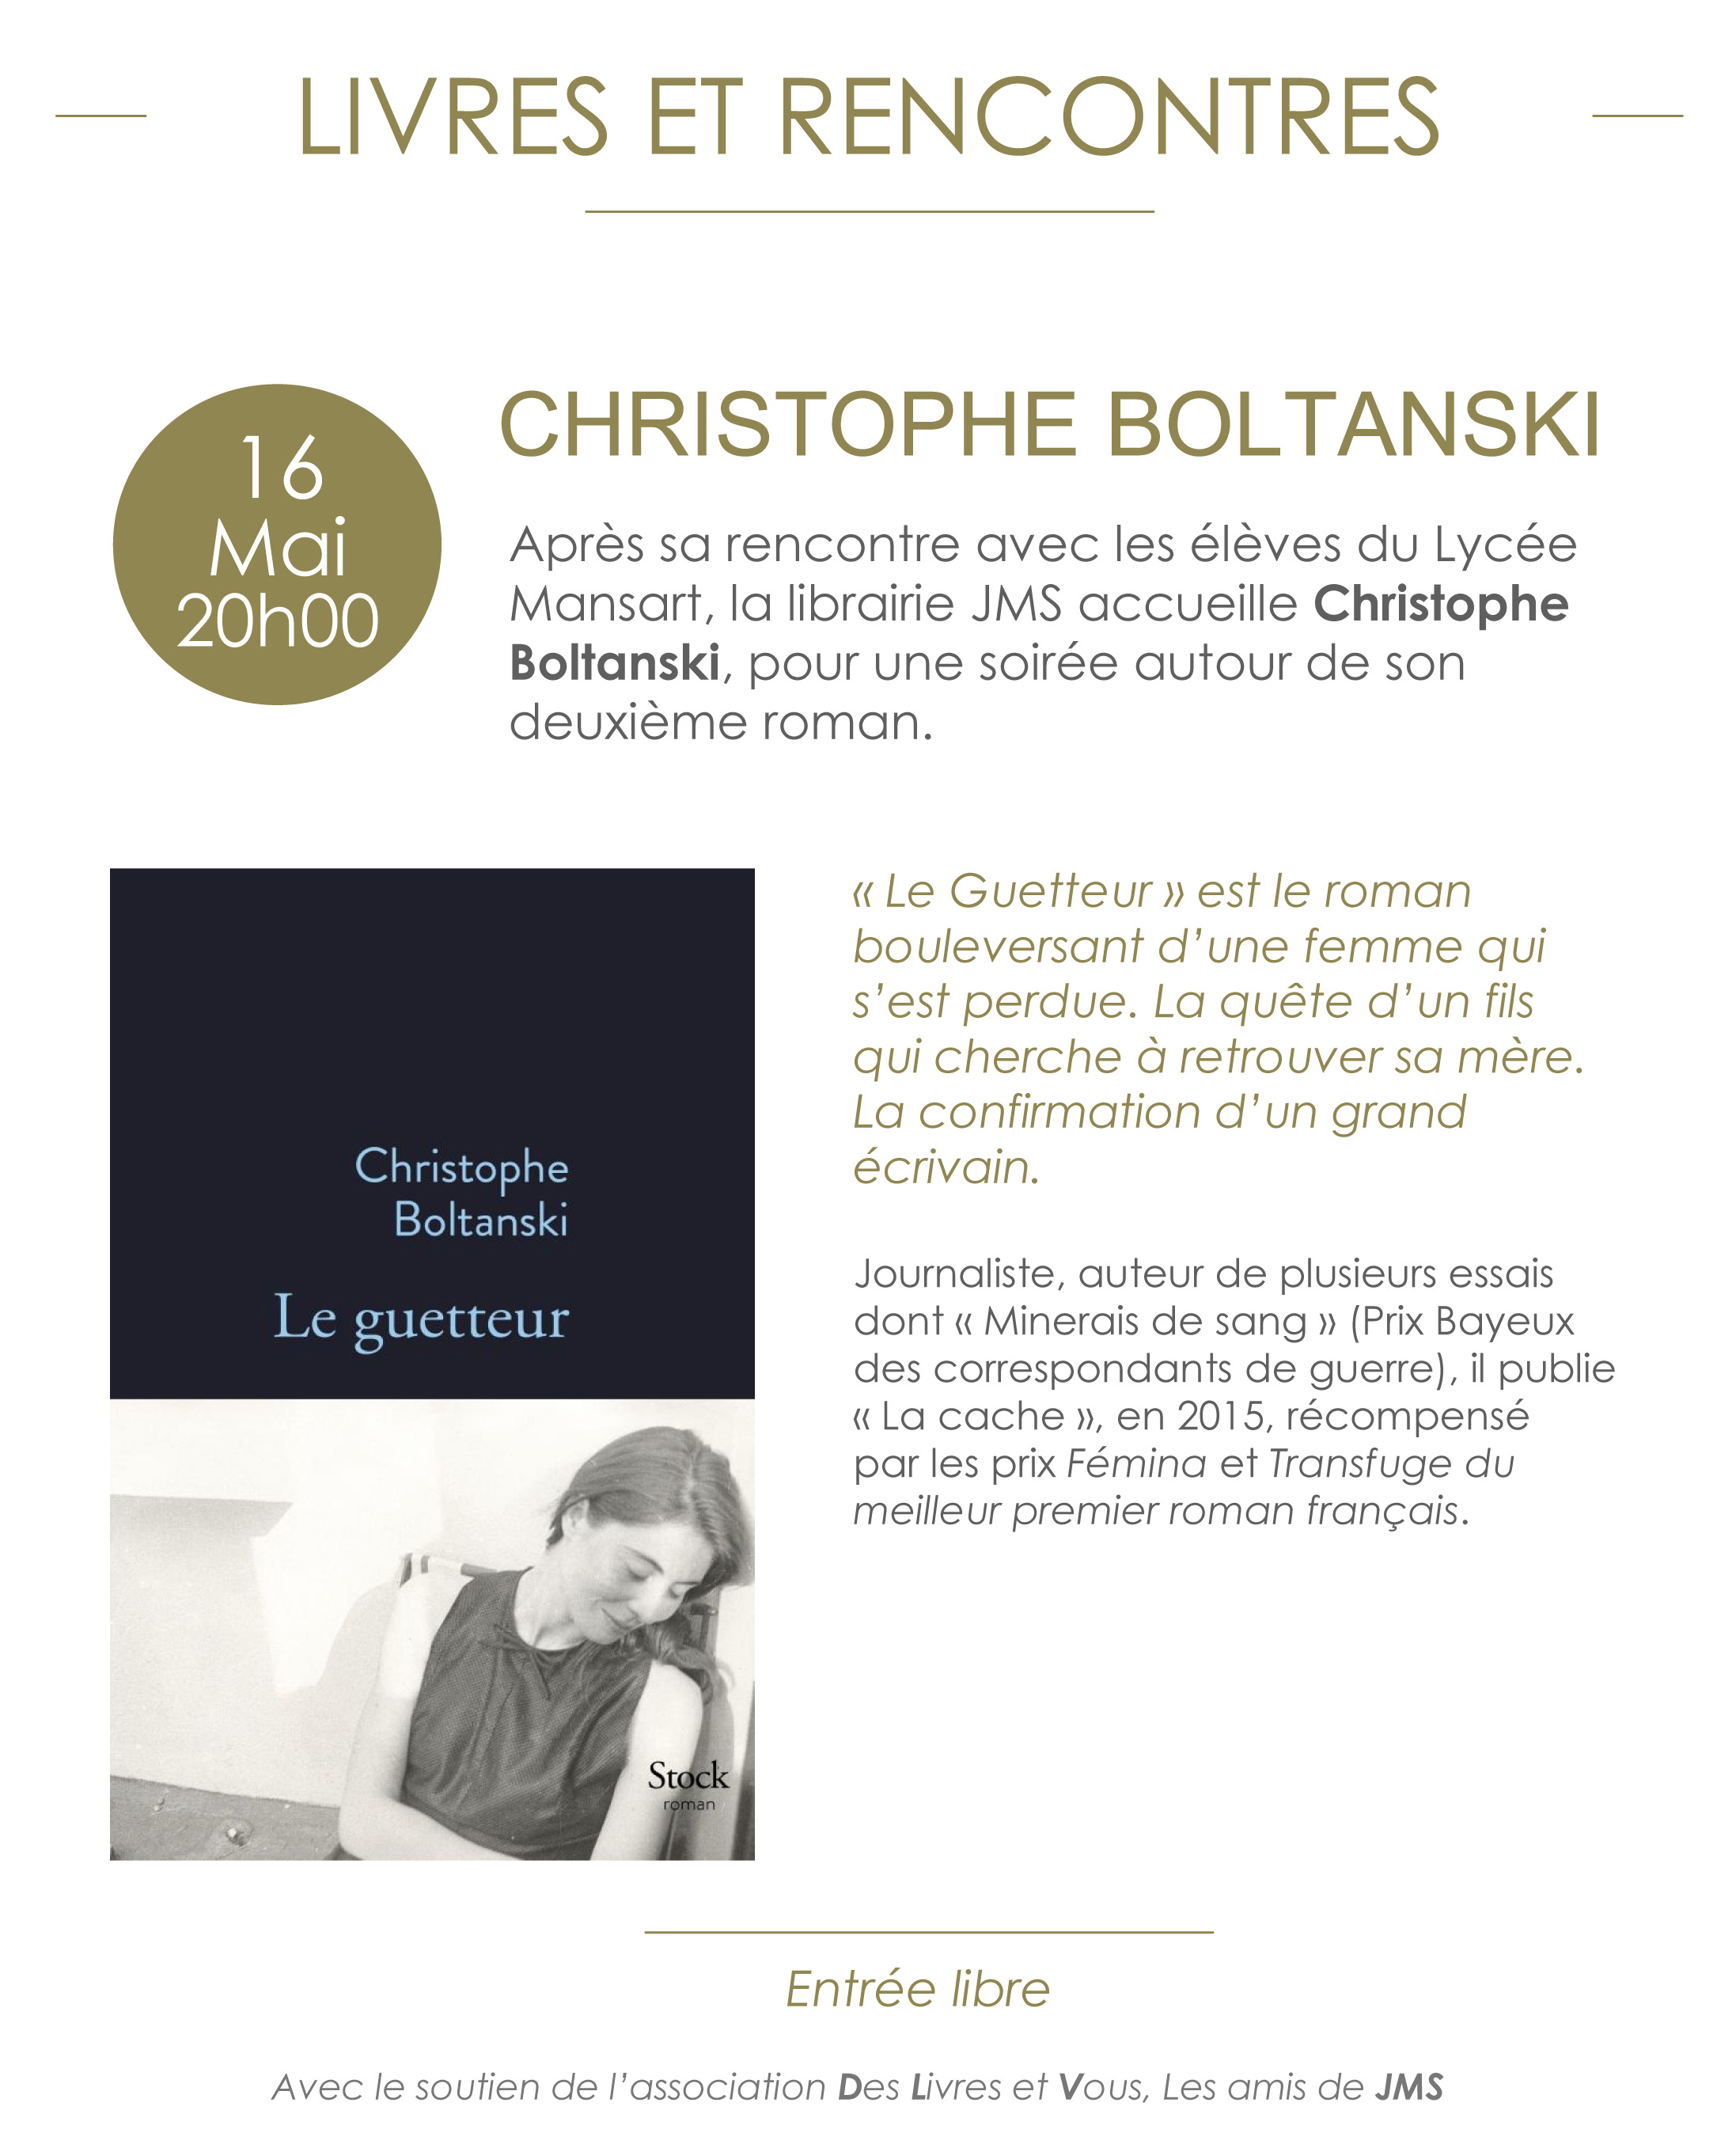 Christophe Boltanski